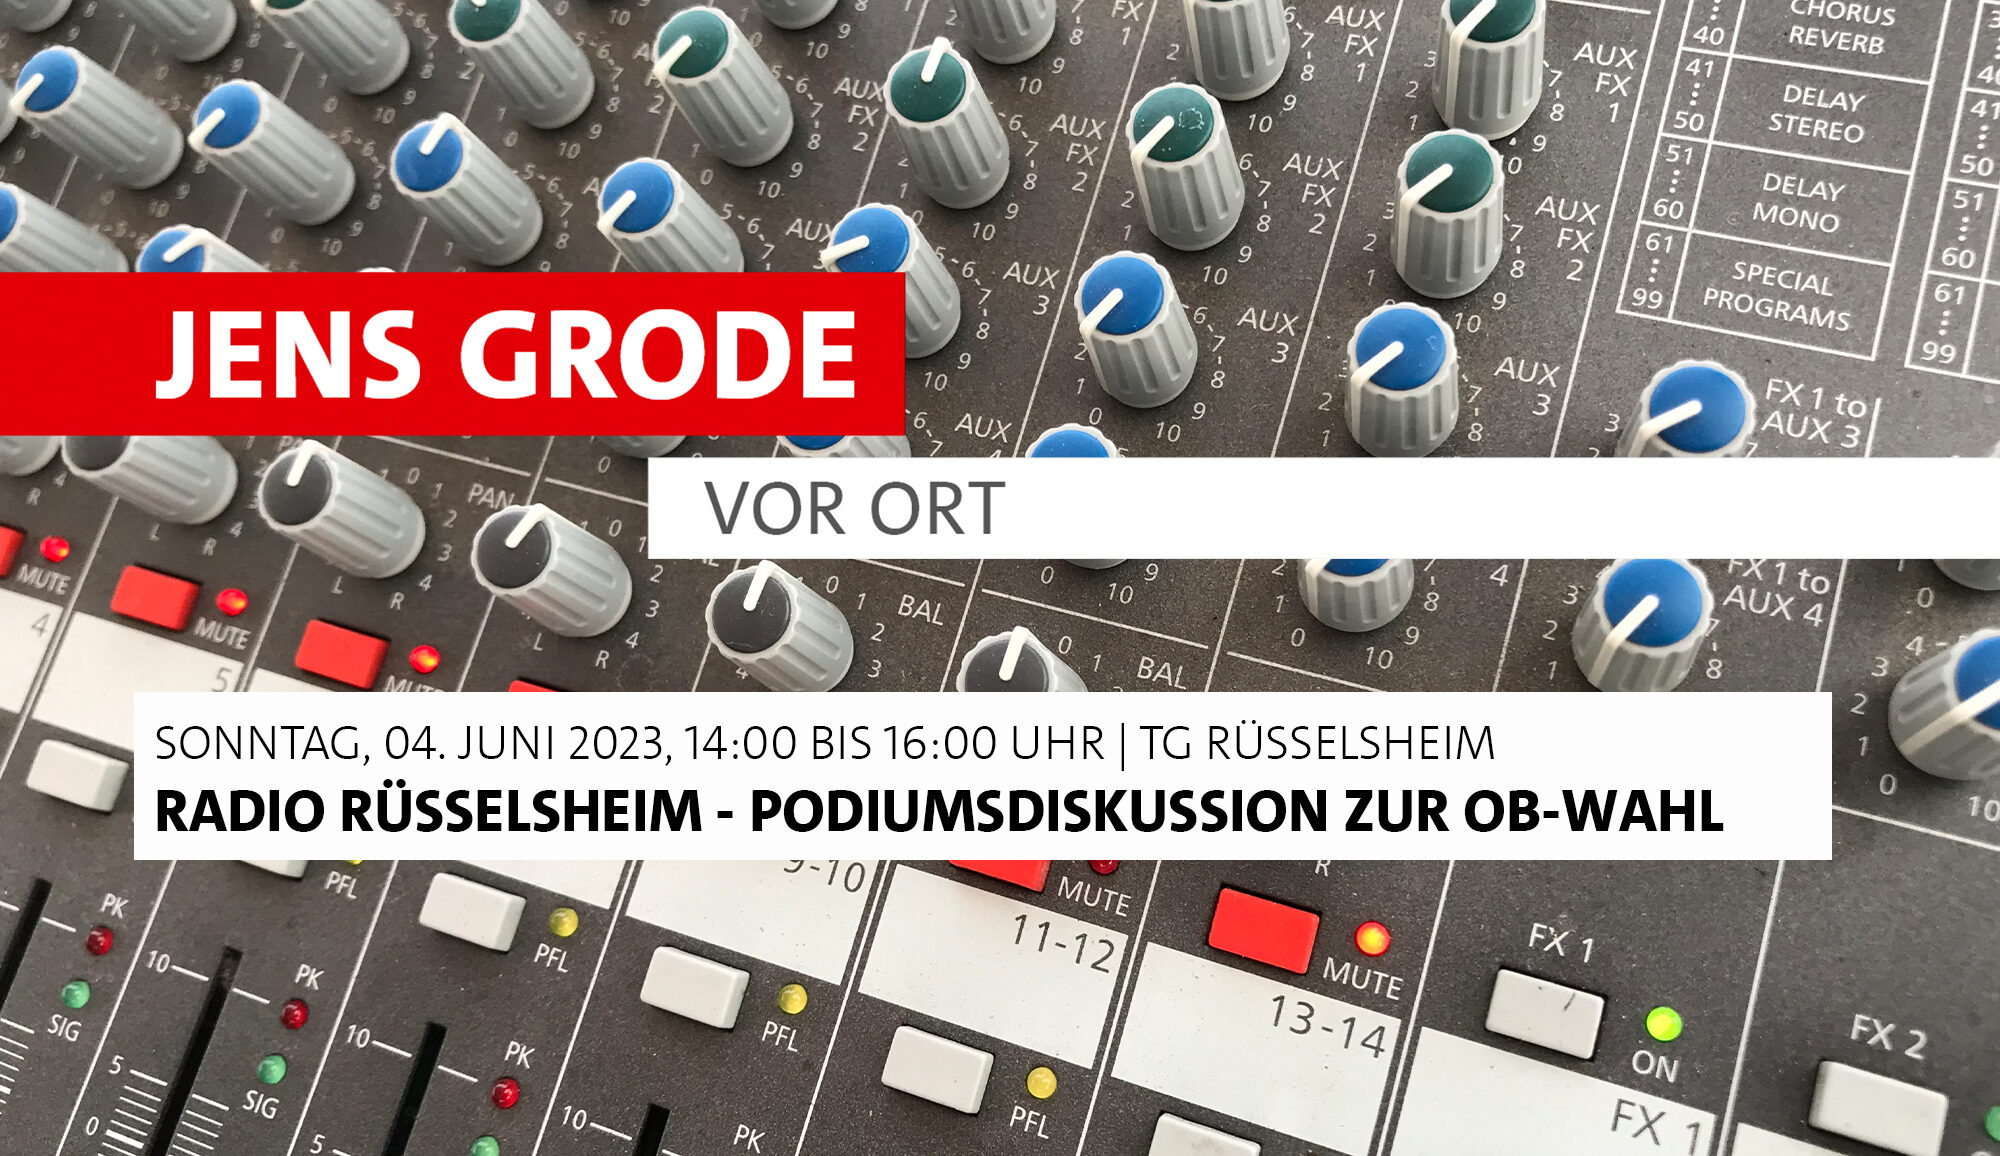 Radio Rüsselsheim - Podiumsdiskussion zur OB-Wahl